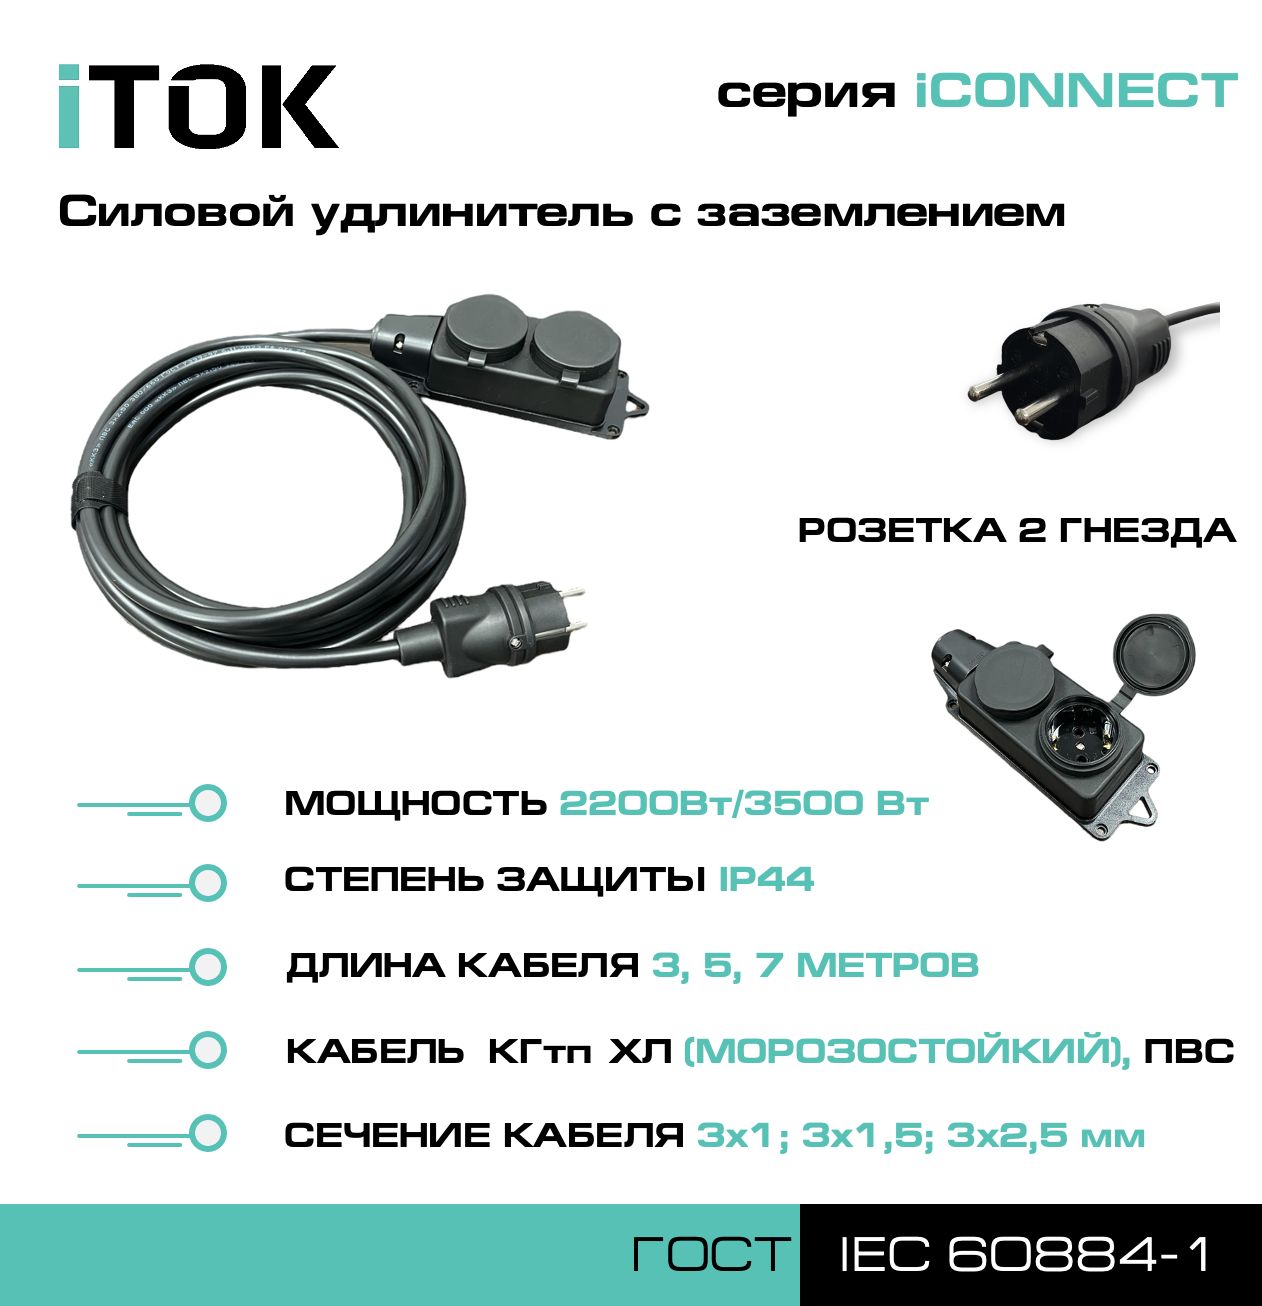 Удлинитель с заземлением серии iTOK iCONNECT ПВС 3х2,5 мм 2 гнезда IP44 7 м